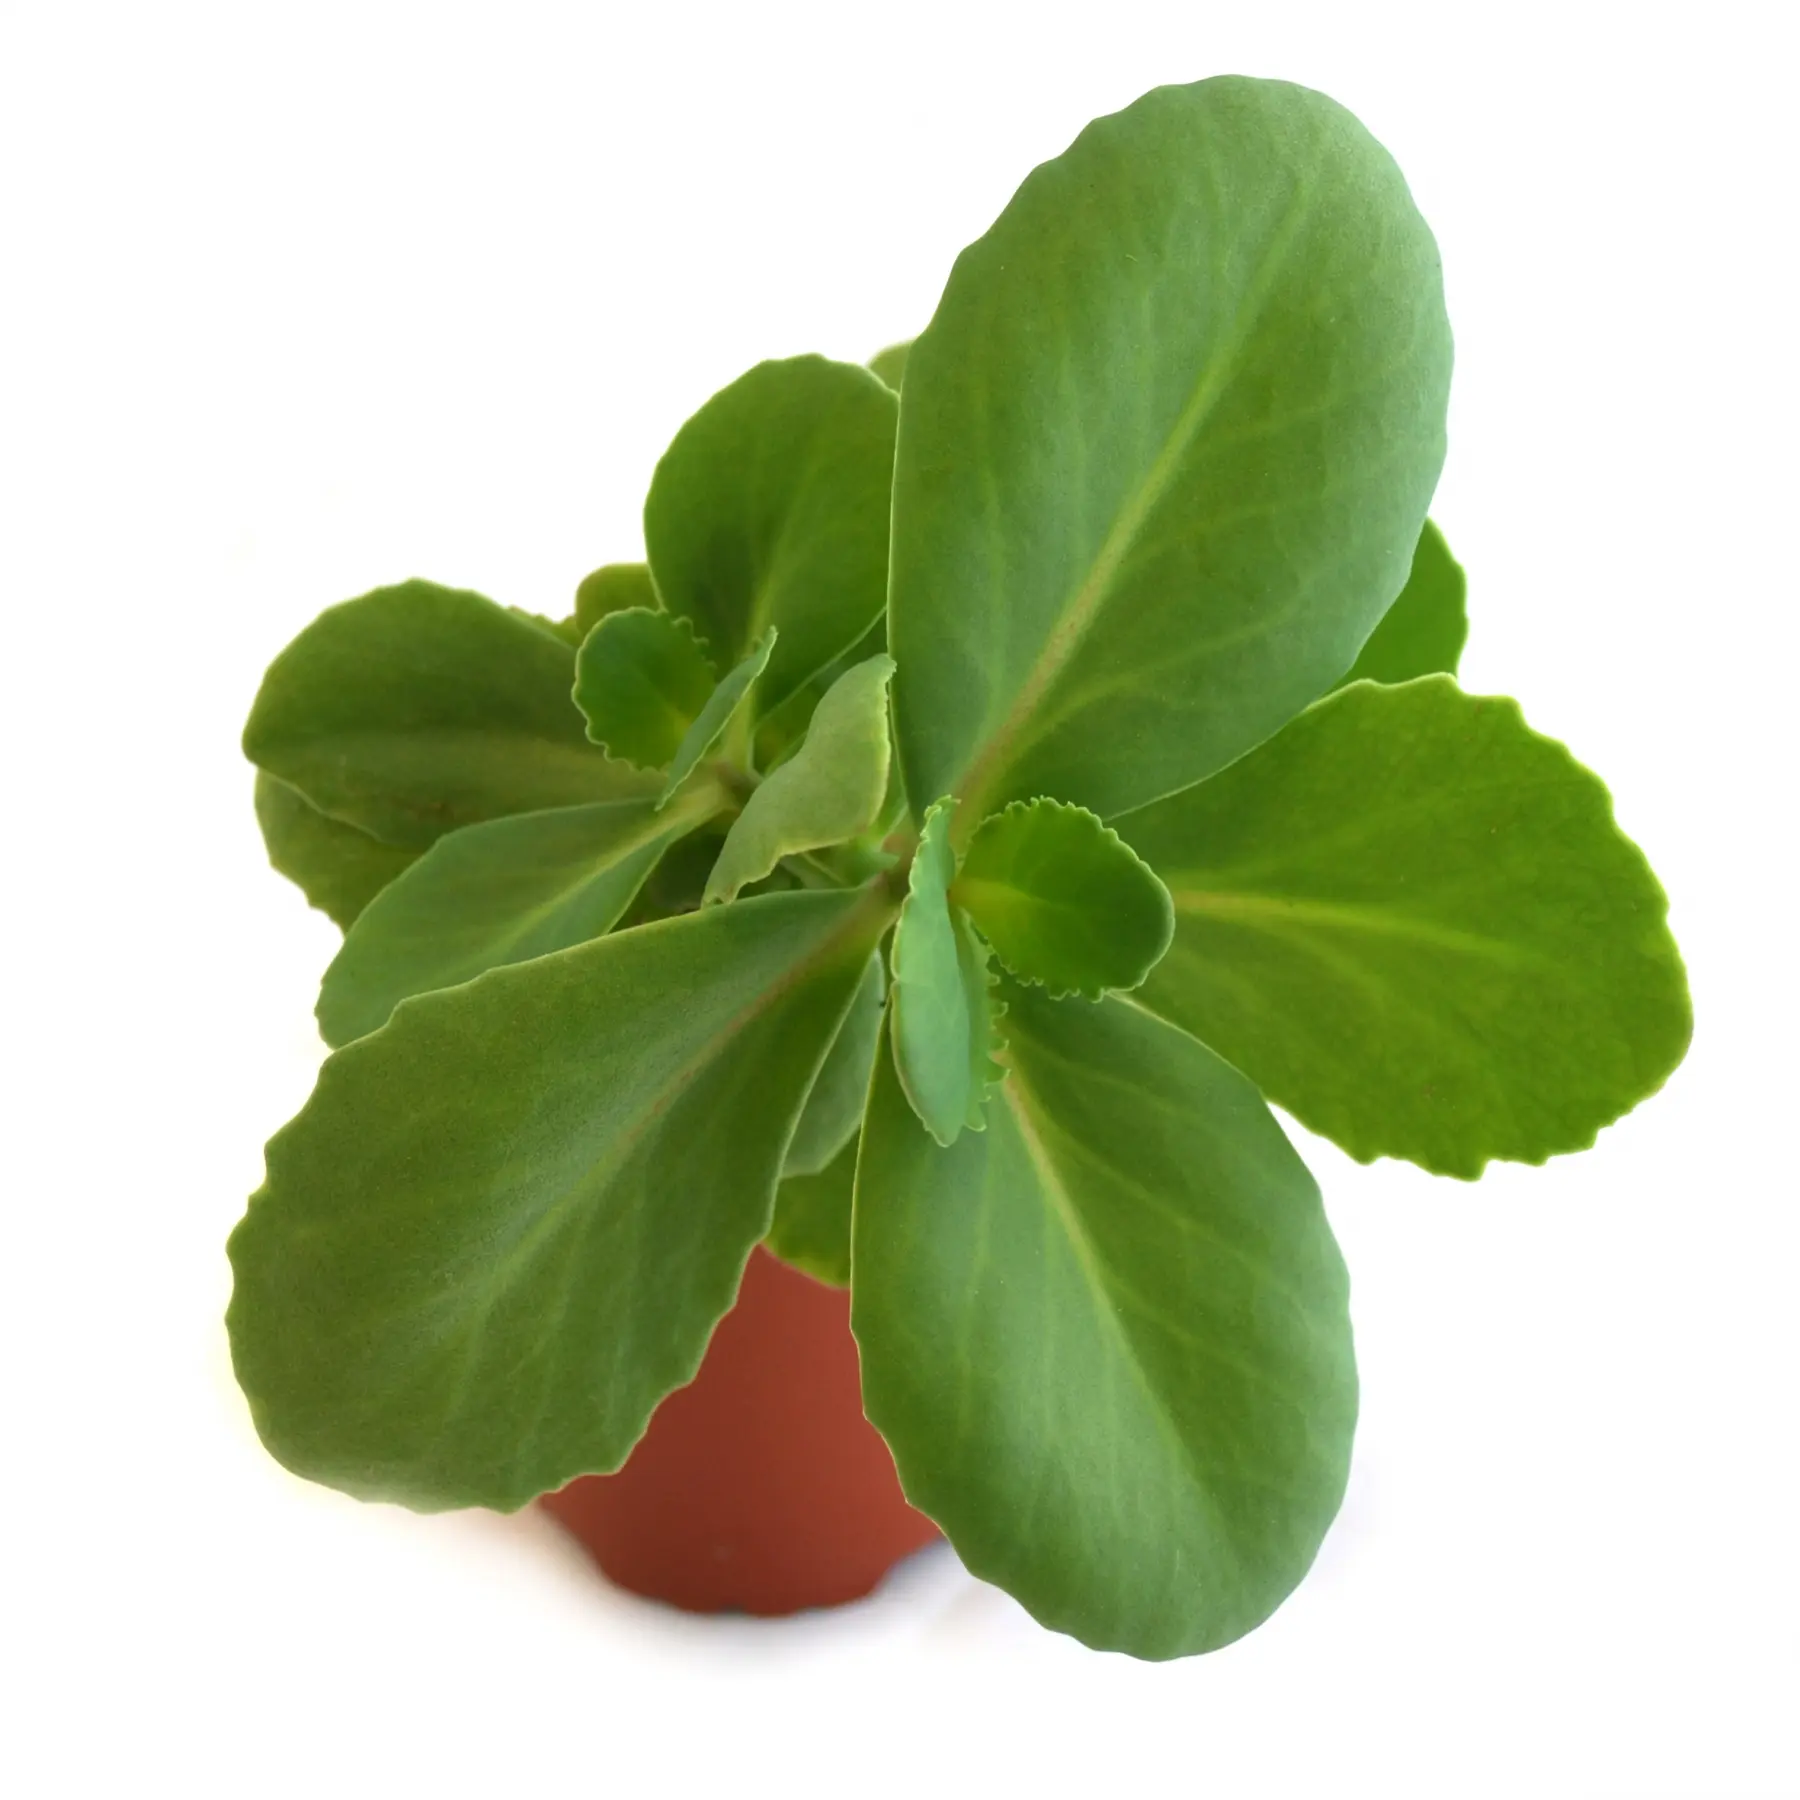 sanalotodo planta medicinal - Cómo se llama la planta pronto alivio